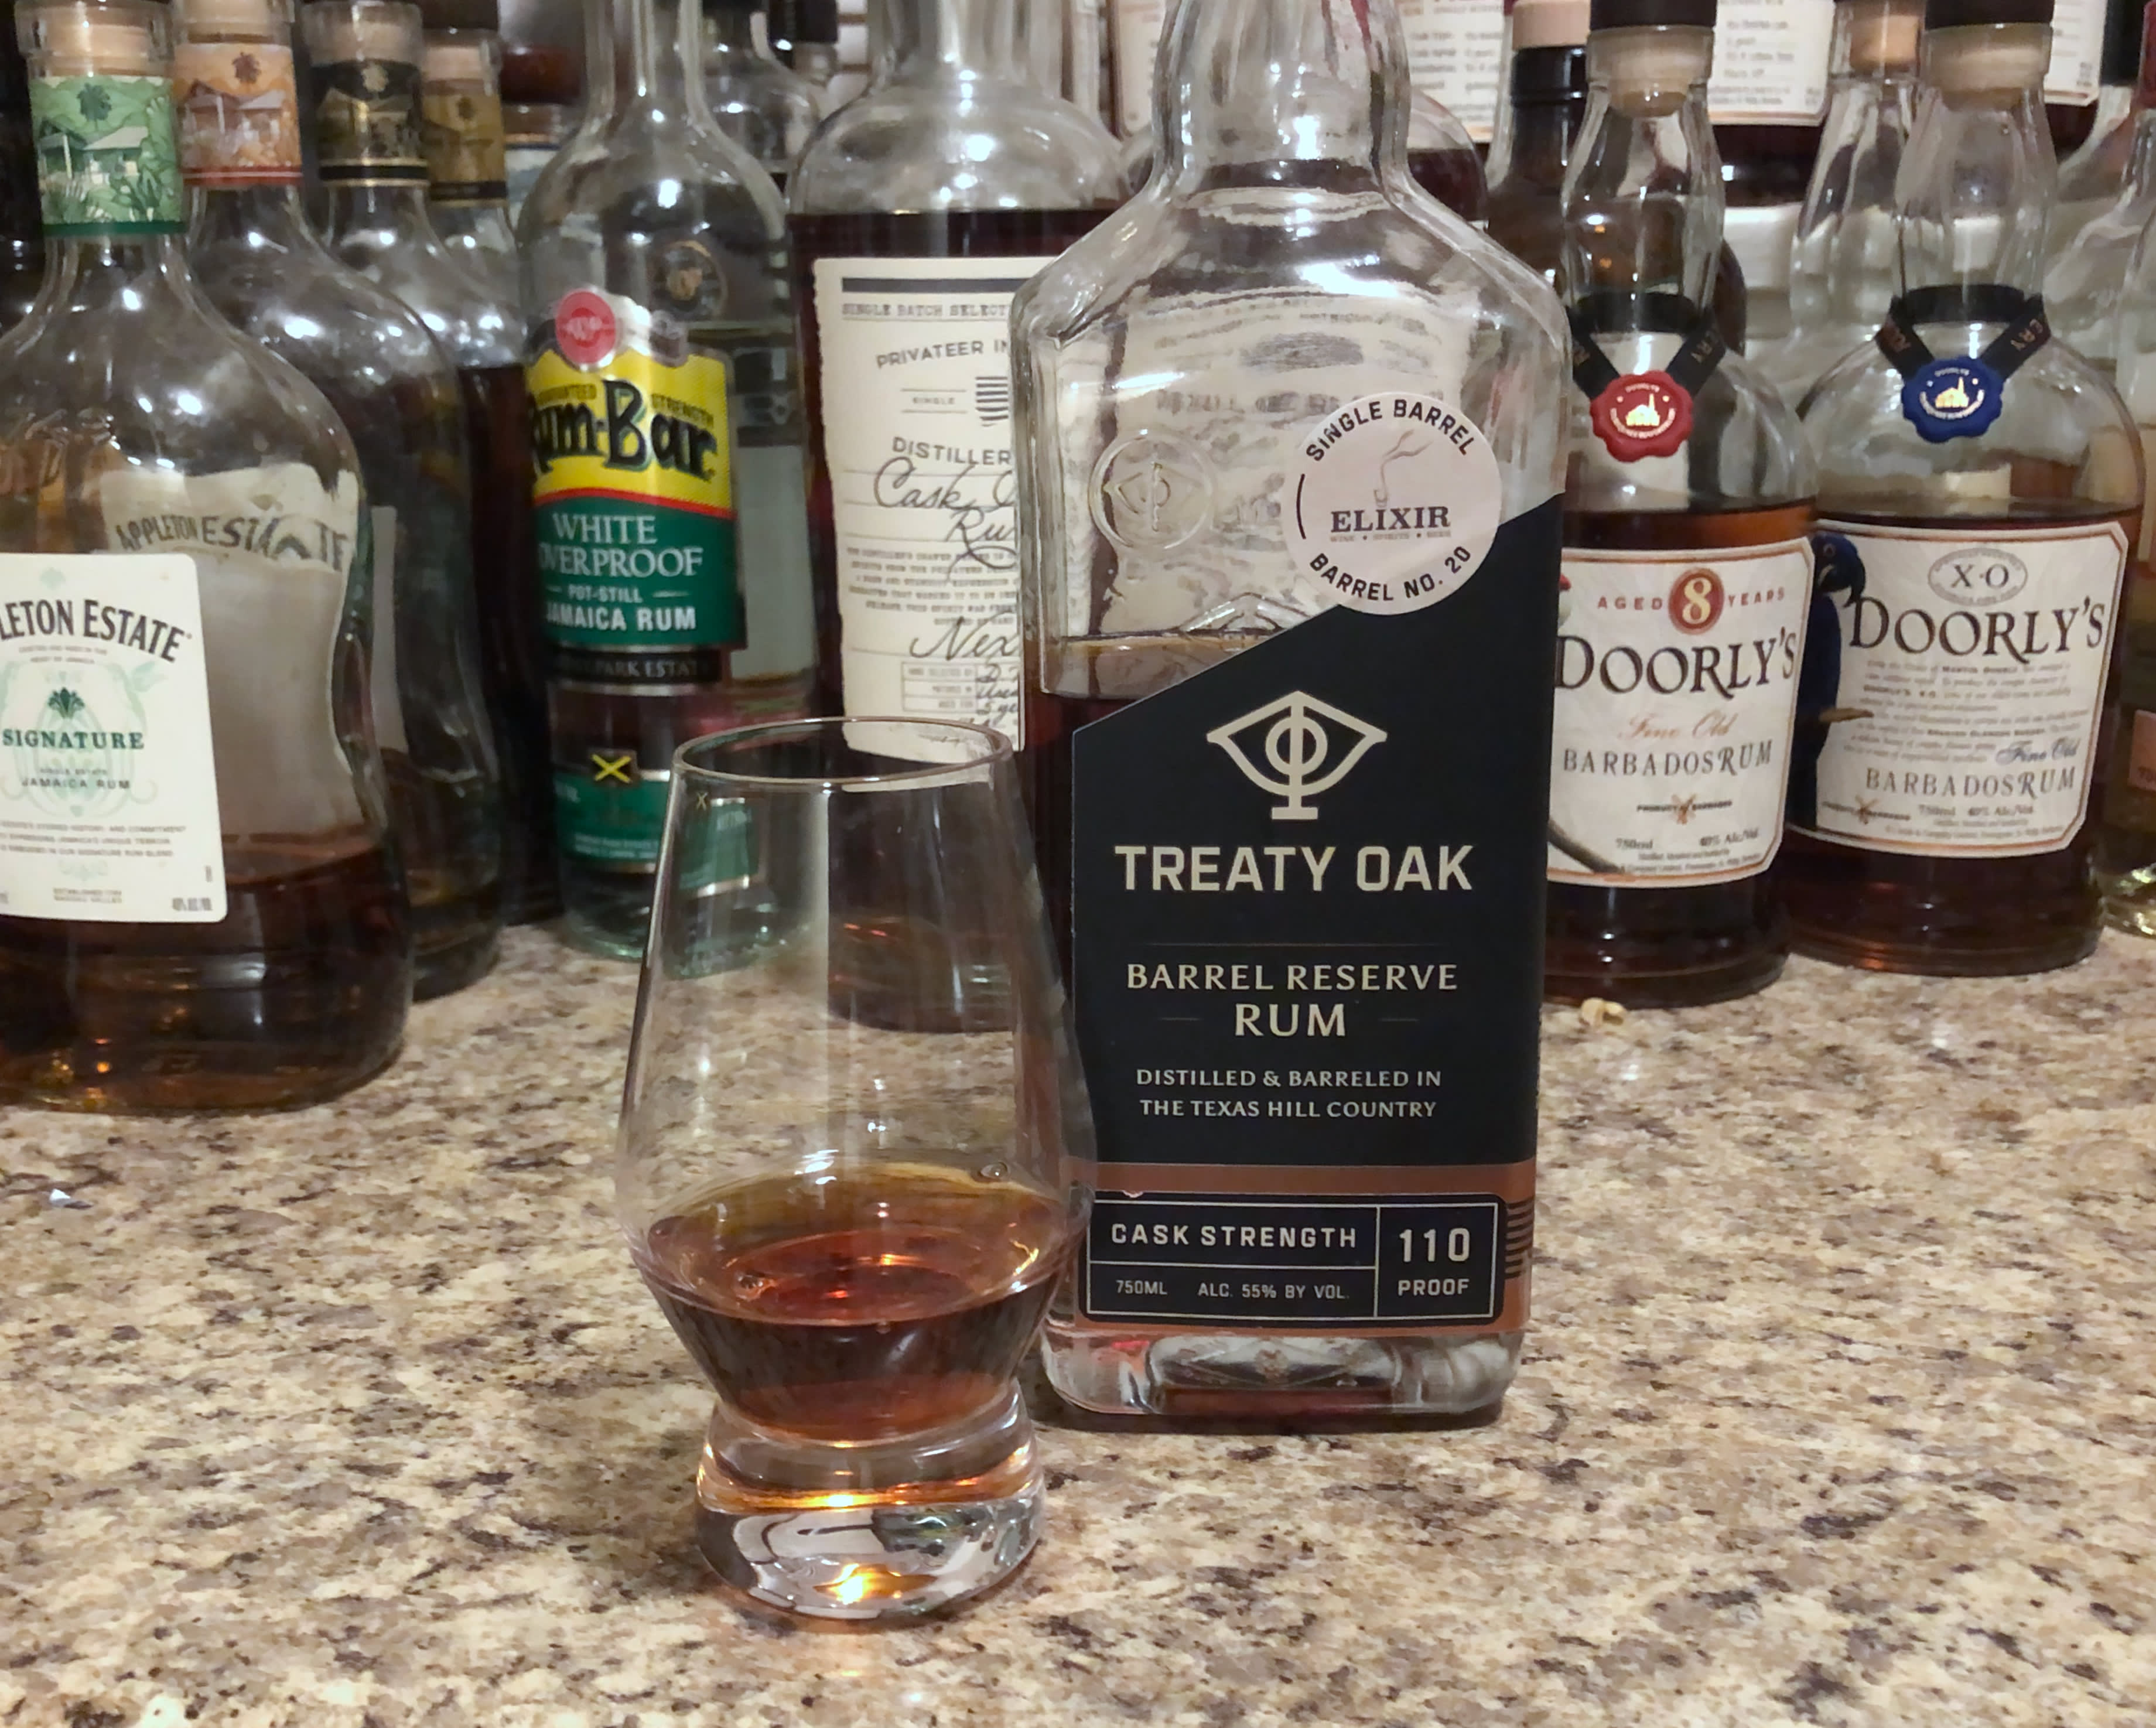 Bottle of Treaty Oak rum sitting on a countertop